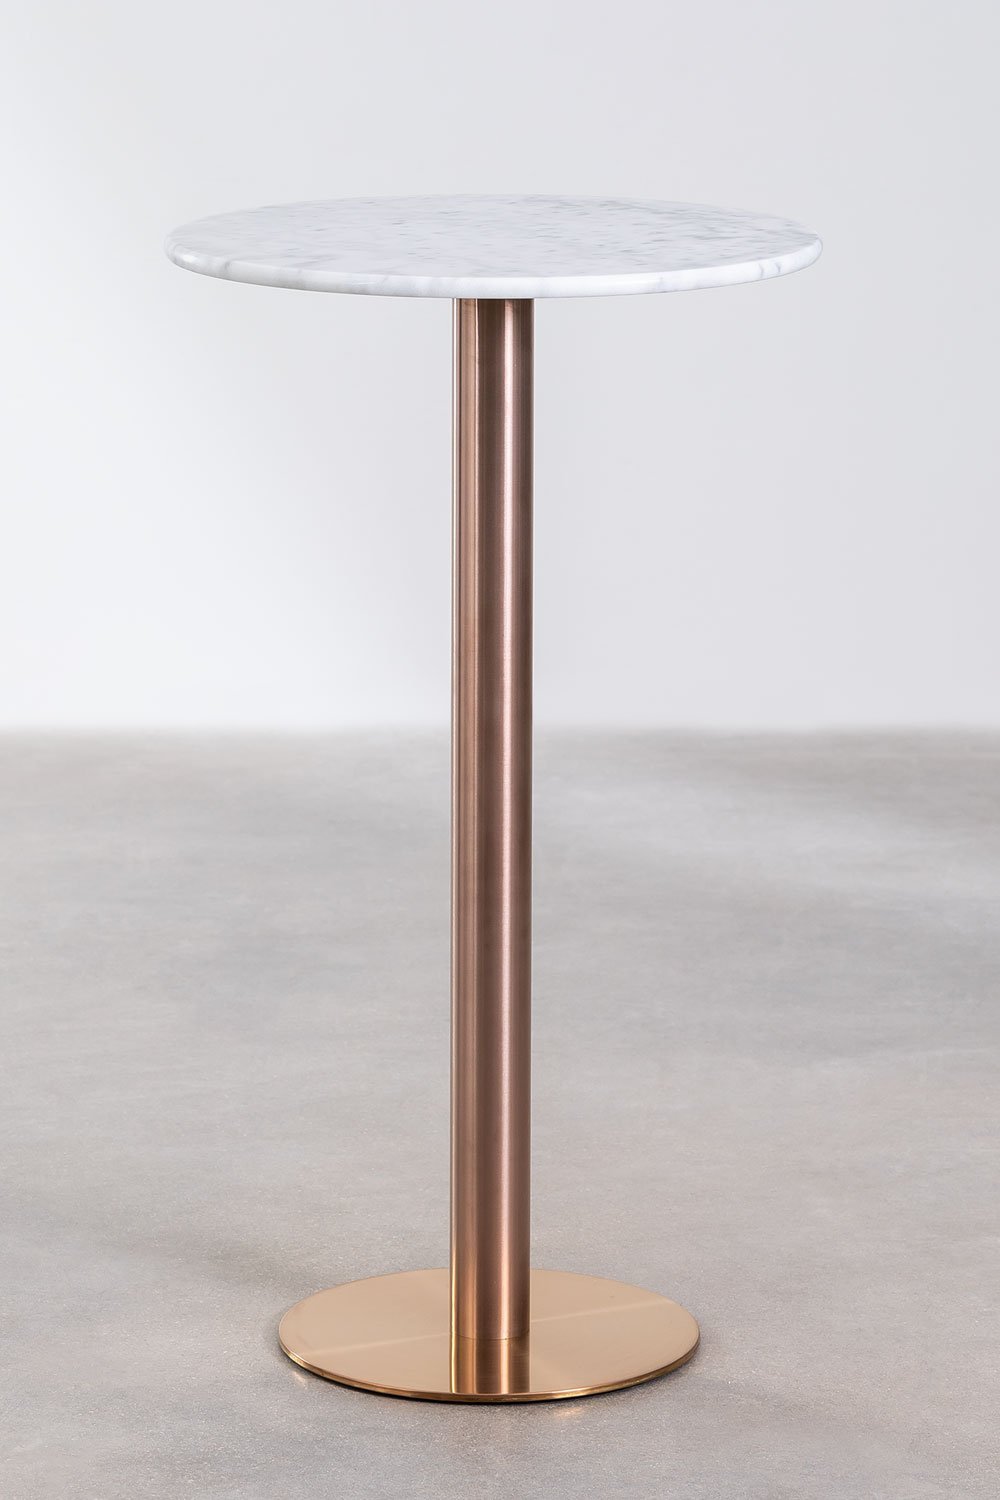 Ronde hoge bartafel in marmer (Ø60 cm) Cosmopolitan, galerij beeld 1